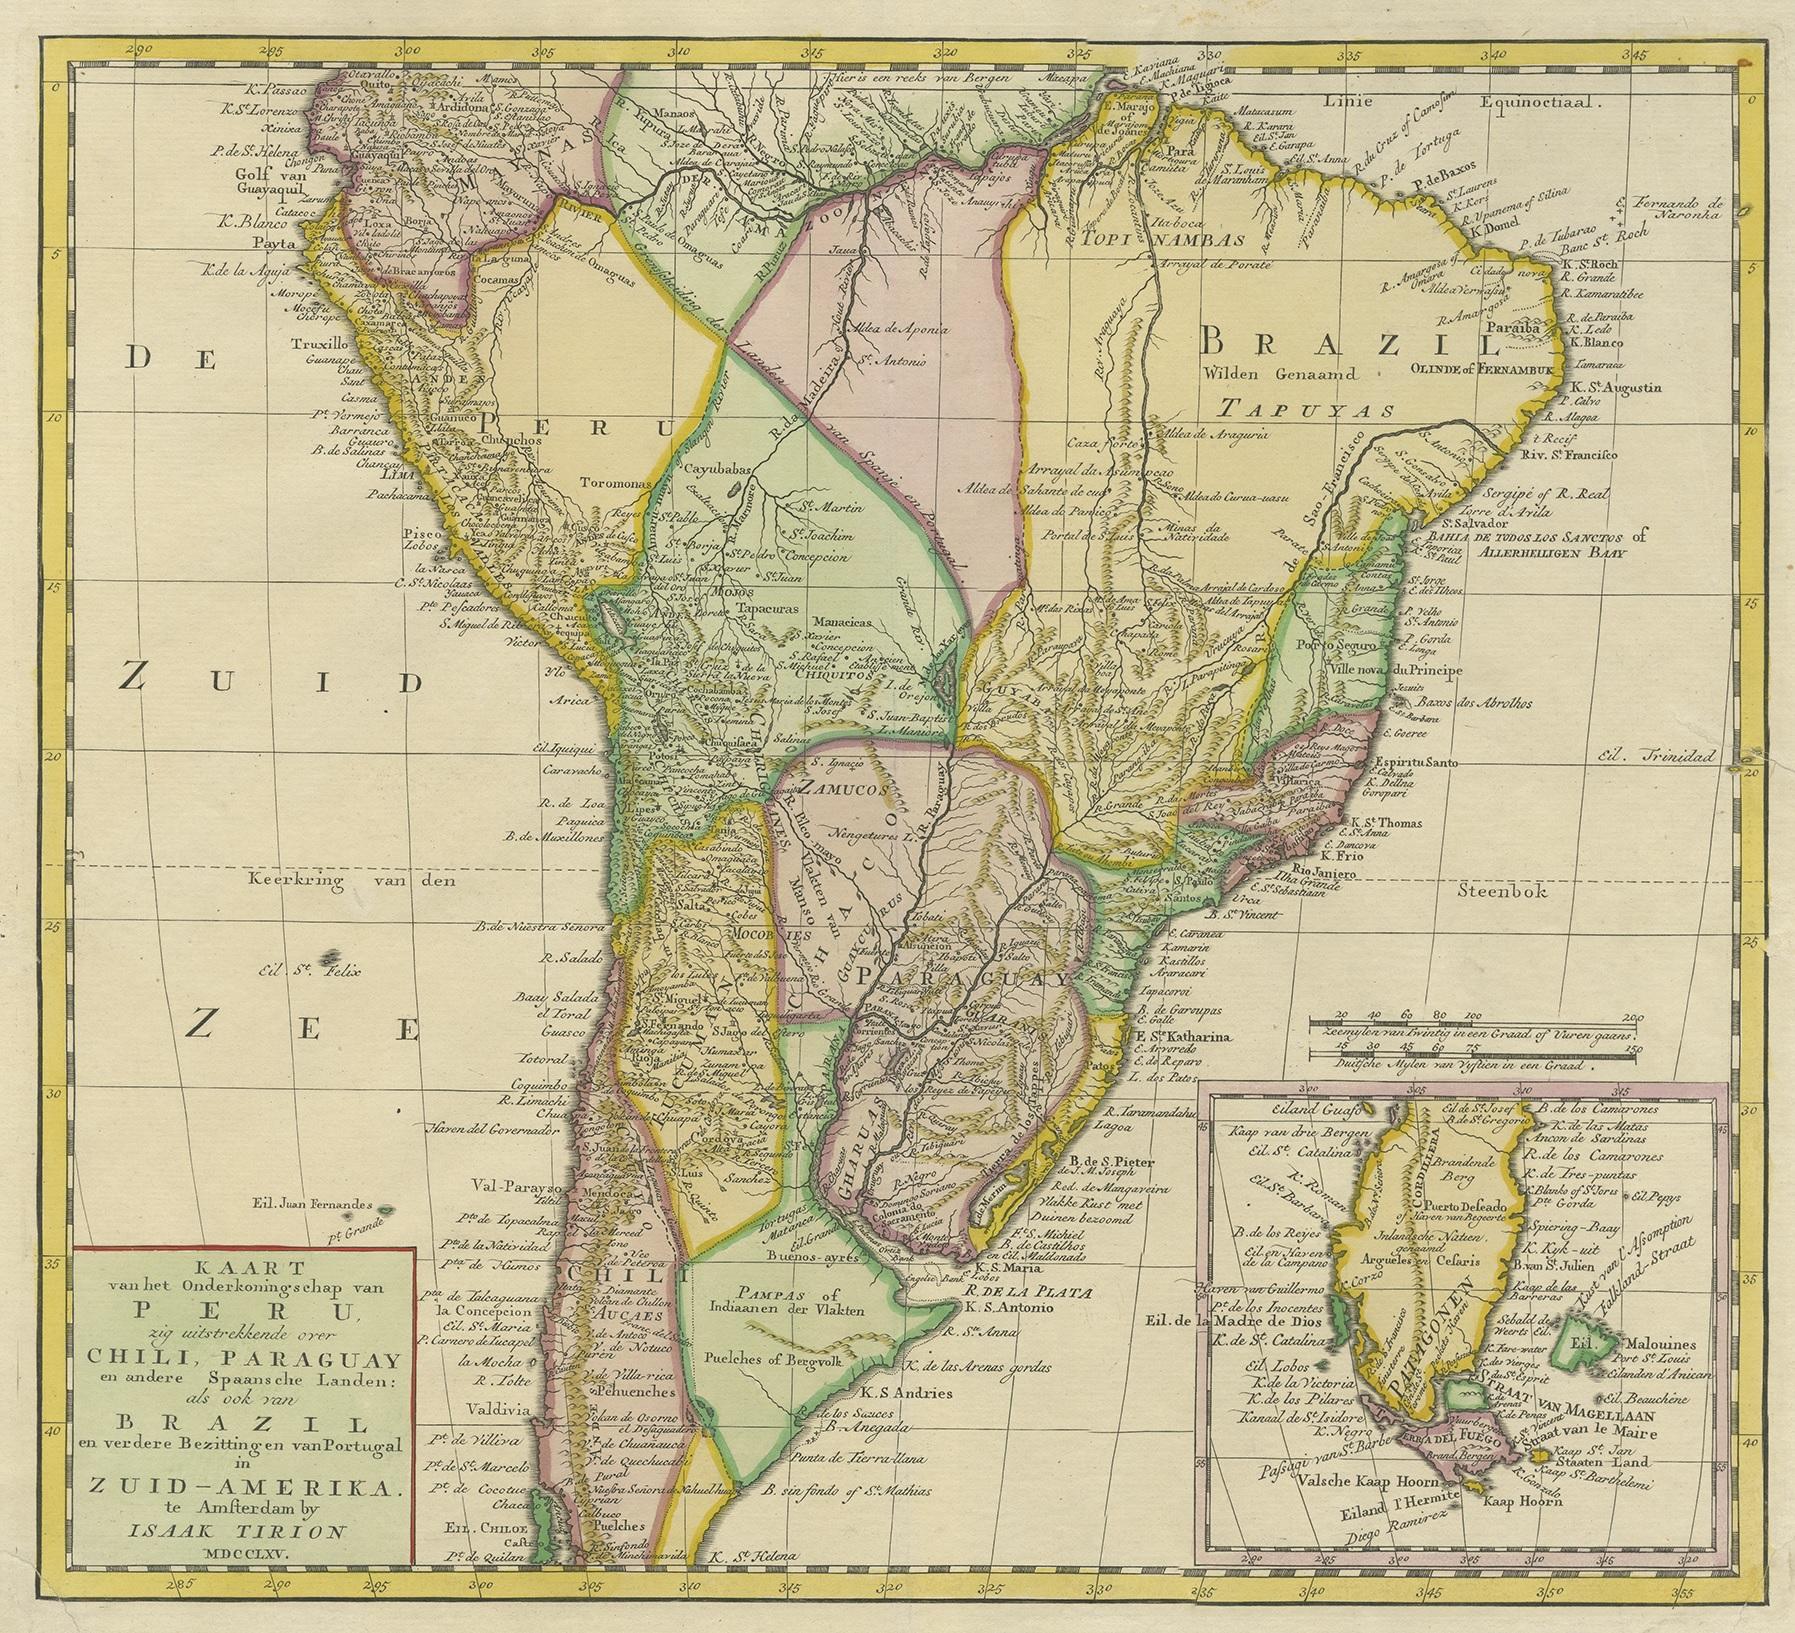 Antique map titled 'Kaart van het Onderkoningschap van Peru, zig uitstrekkende over Chili, Paraguay en andere Spaansche Landen: als ook van Brazil en verdere Bezittingen van Portugal in Zuid-Amerika'. Attractive and quite detailed map of most of